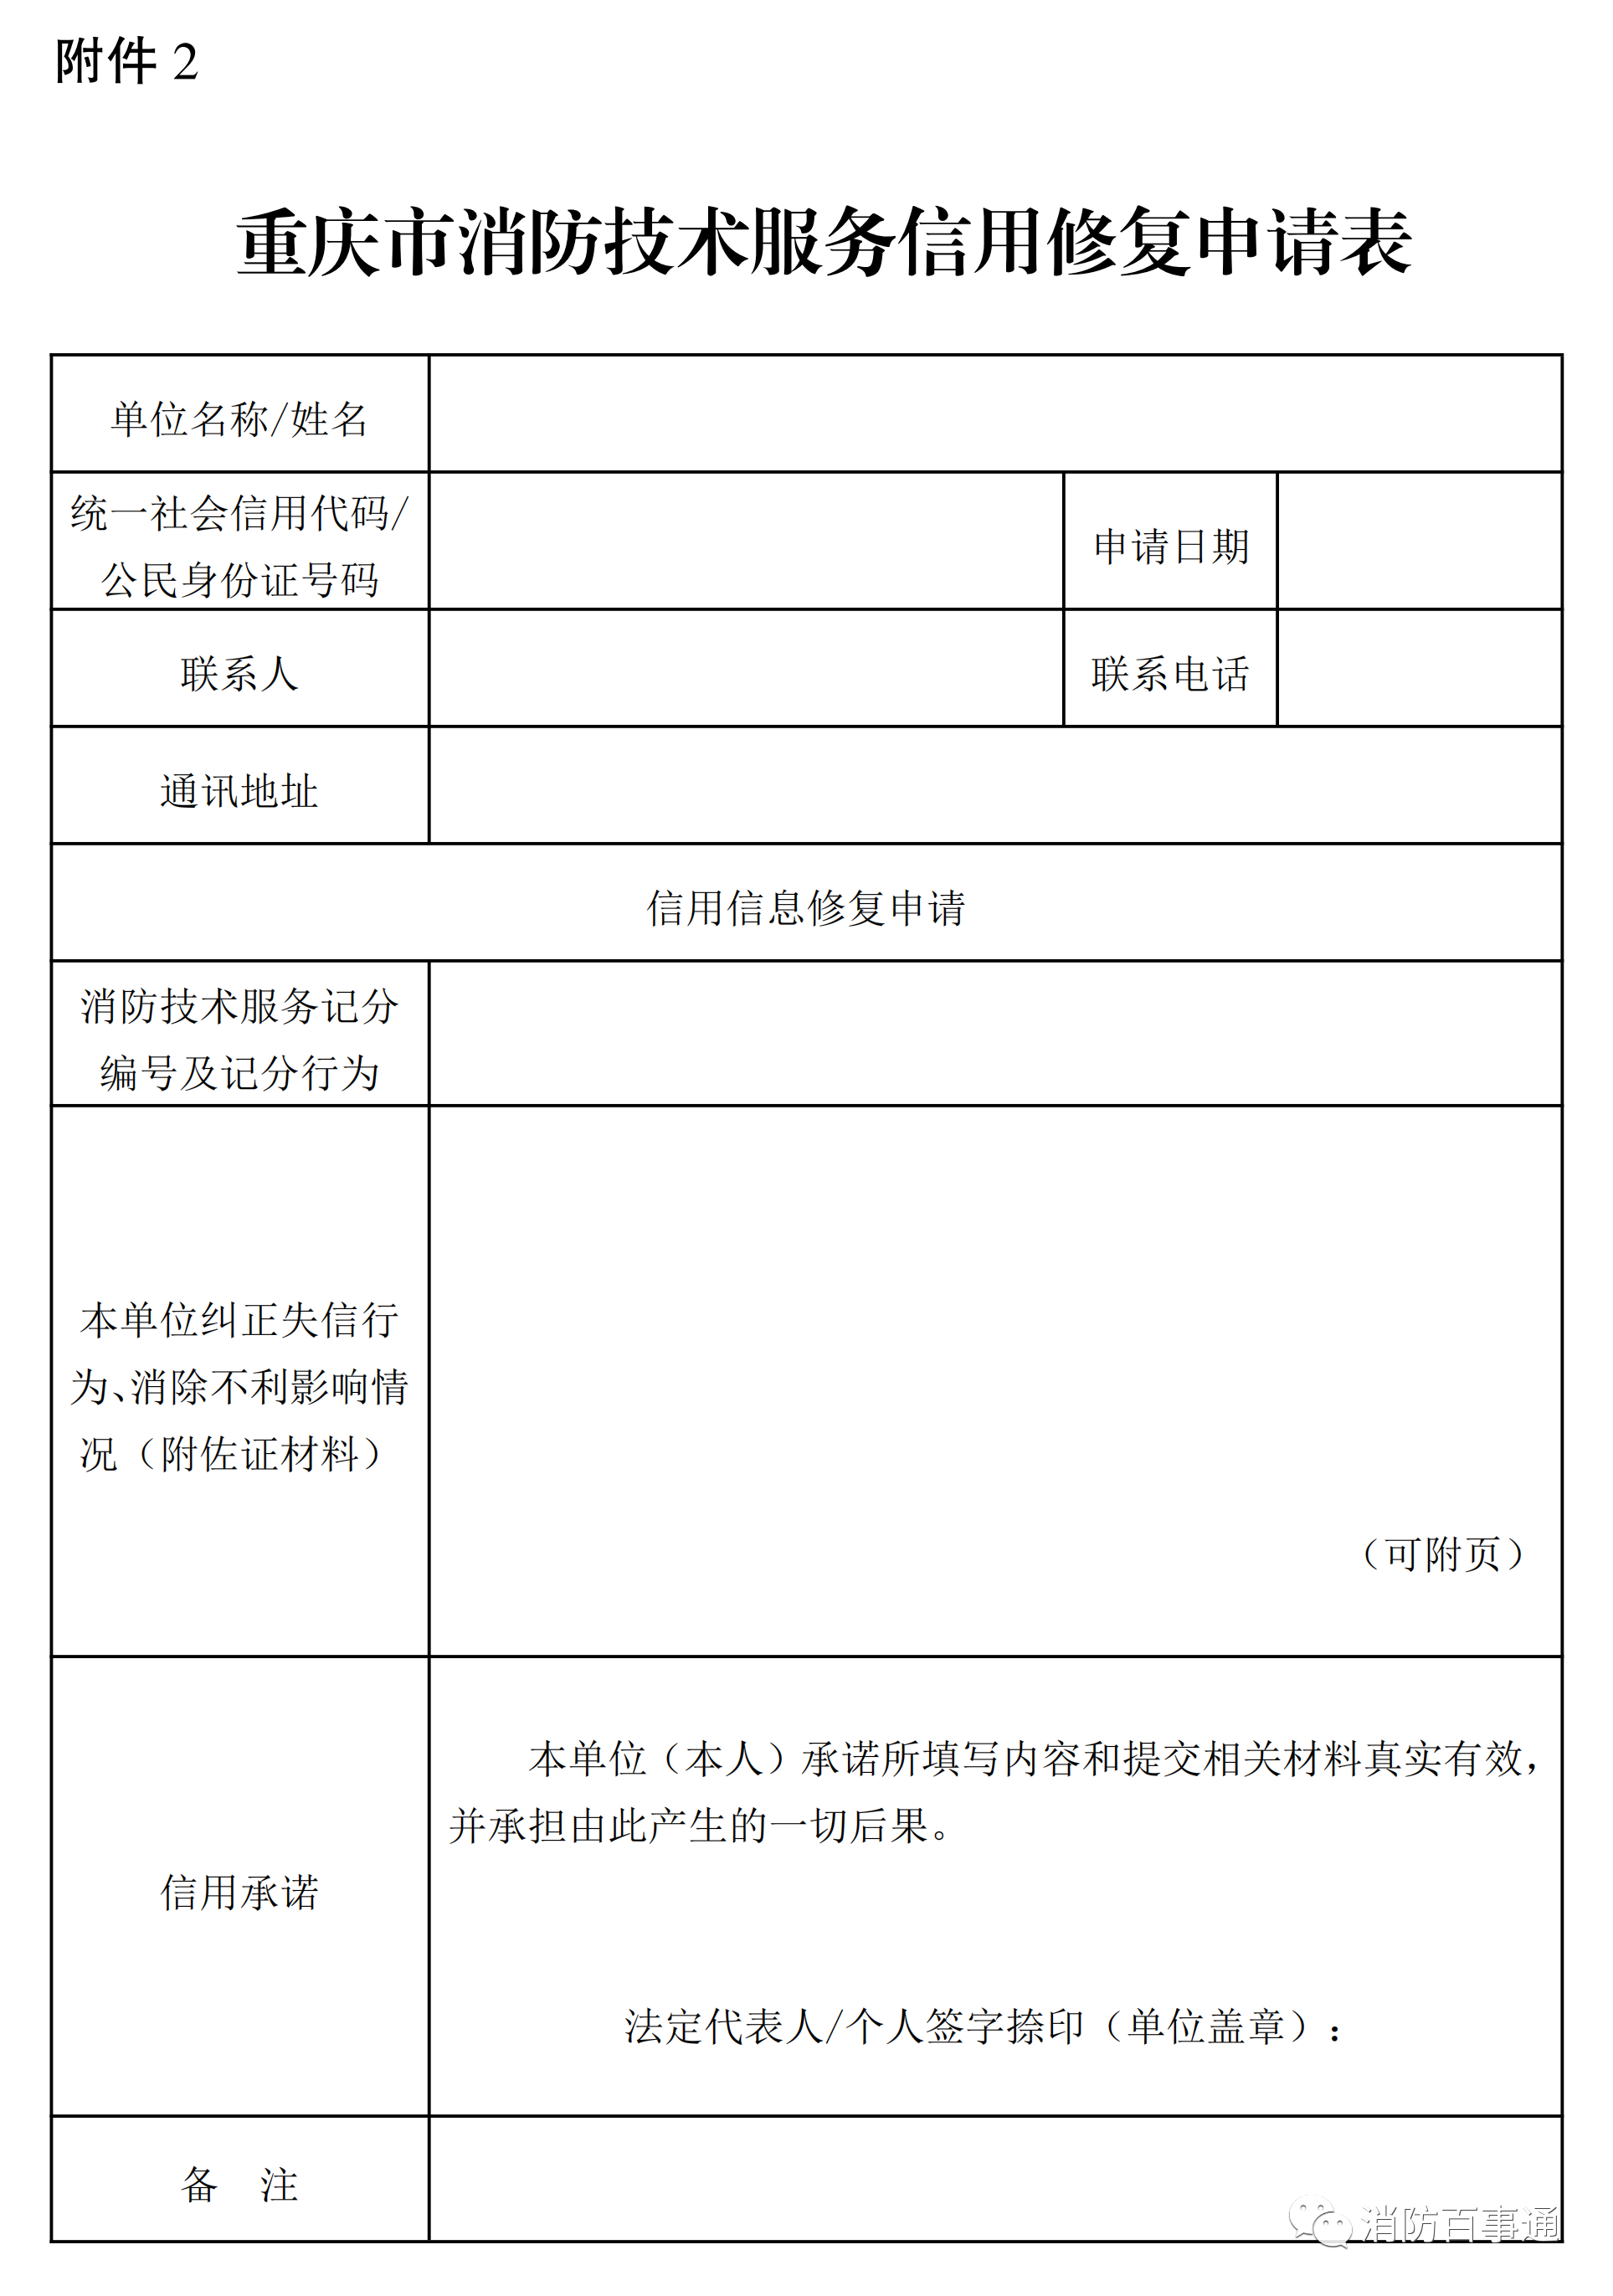 重庆市消防技术服务信用修复申请表